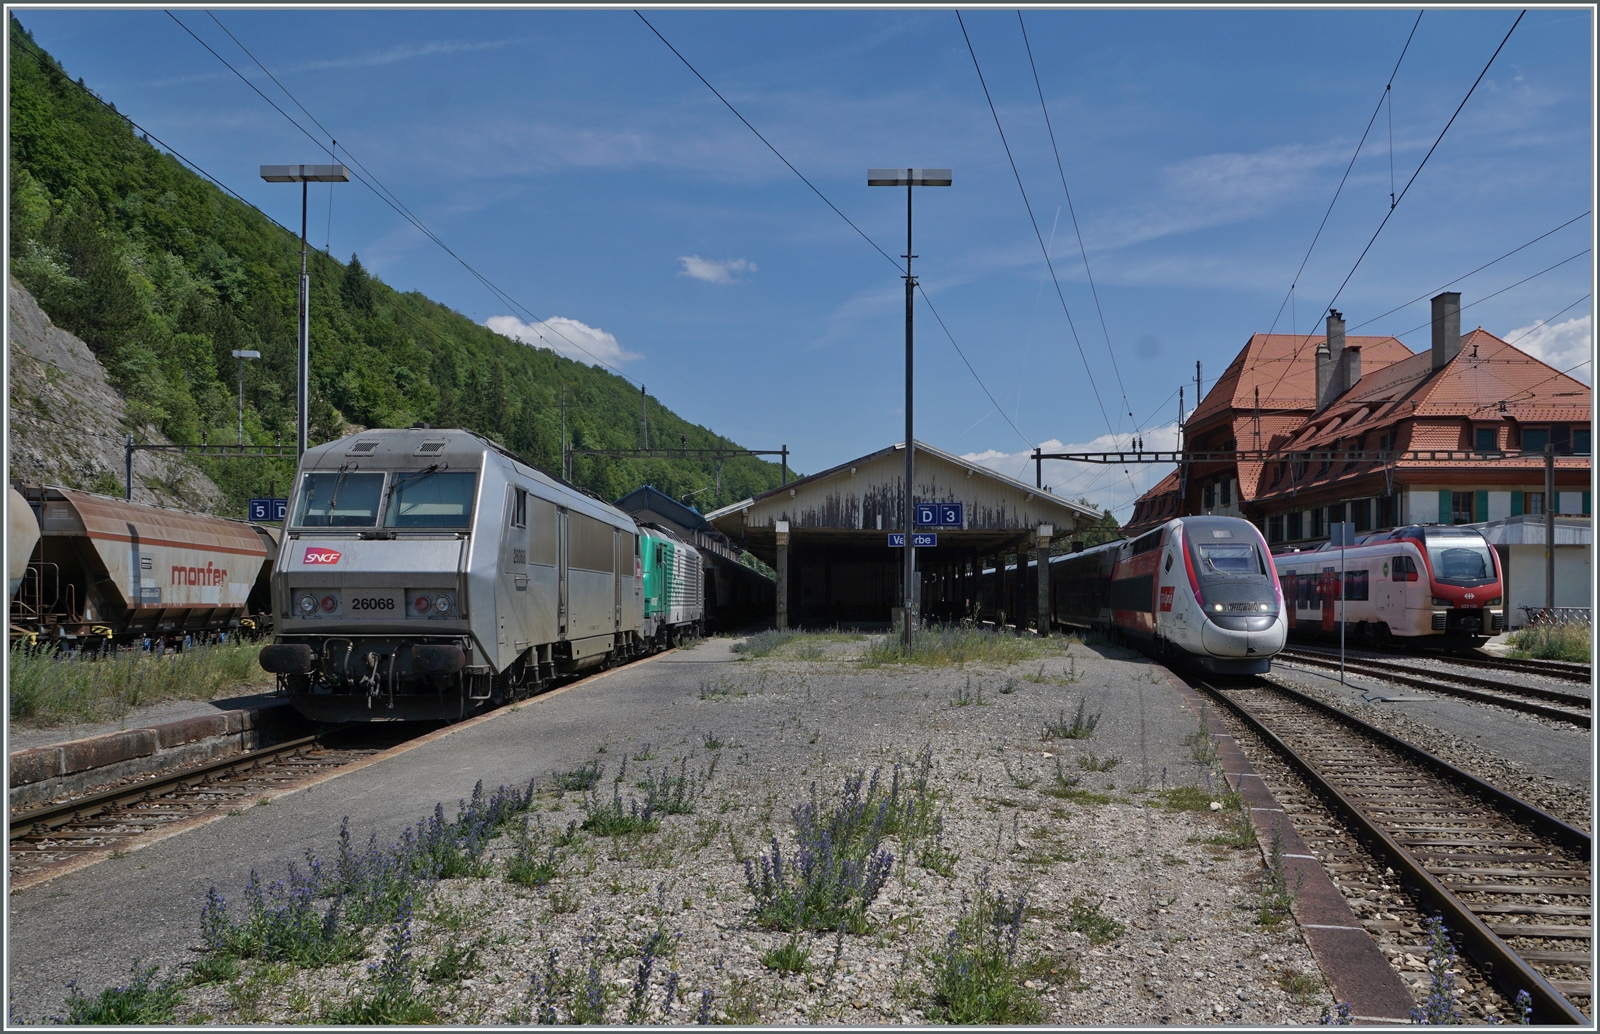 Während rechts im Bild der TGV Lyria 9268 den Bahnhof Vallorbe in Richtung Paris Gare de Lyon verlässt, steht links im Bild der (leere)  Spaghetti -Zug mit der SNCF BB 26068 (91 87 0026 068-3 F-SNCF) und BB 27067 bzw. BB 427067 (UIC 91 87 0027 067-4 F-SNCF) abgebügelt auf Gleis 4. Der Güterzug wird nach der Pause der beiden Lokführer pünktlich Richtung Frankreich abfahren. So viel SNCF ist in Vallorbe leider nicht oft zu sehen. Zudem ist im Hintergrund noch ein SBB Flirt3 zu erkennen. 

16. Juni 2022 